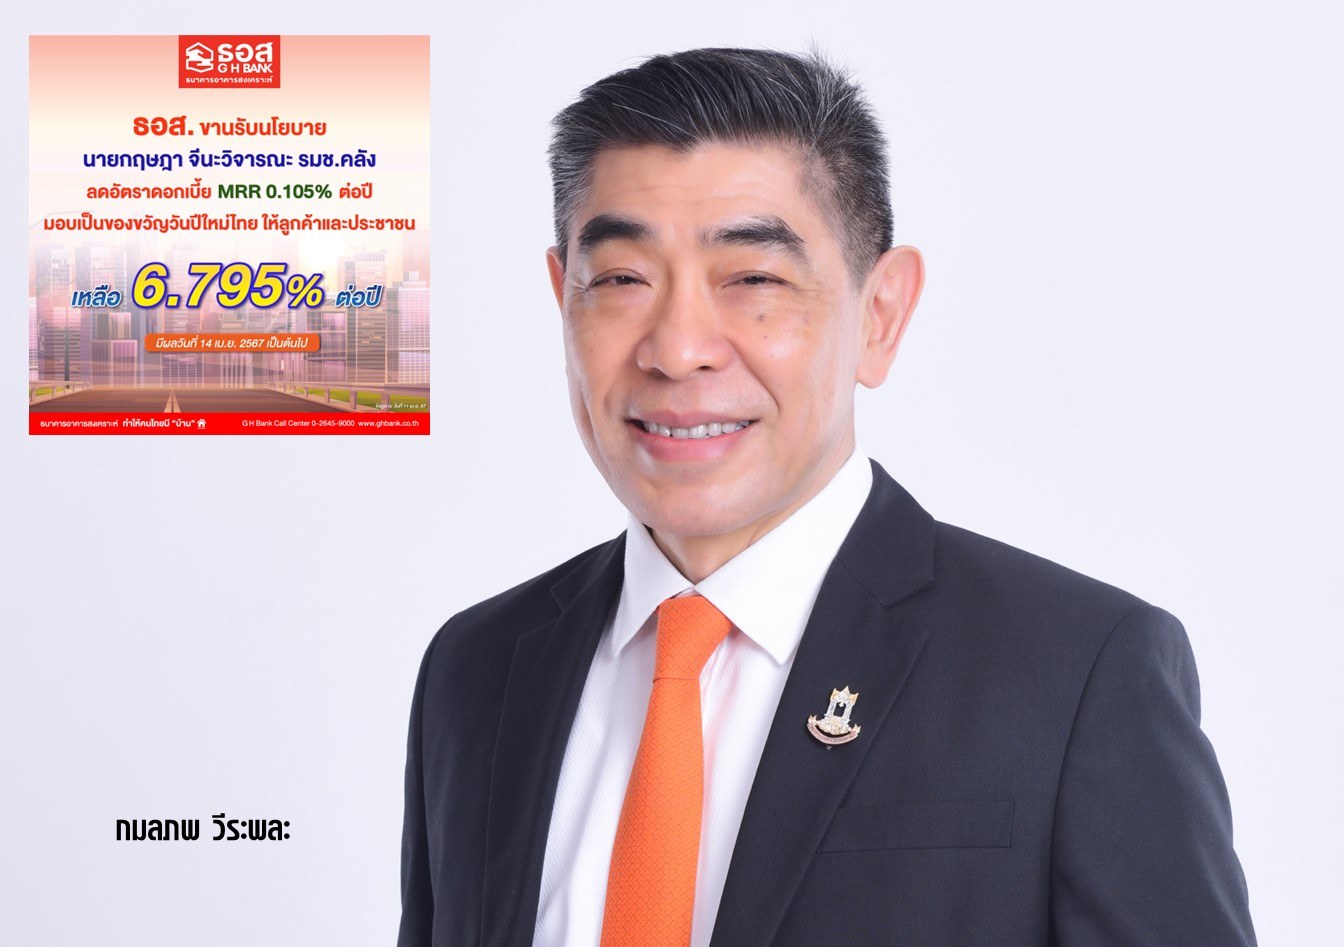 ธอส. ขานรับนโยบายลดอัตราดอกเบี้ย MRR 0.105% มอบของขวัญวันปีใหม่ไทย